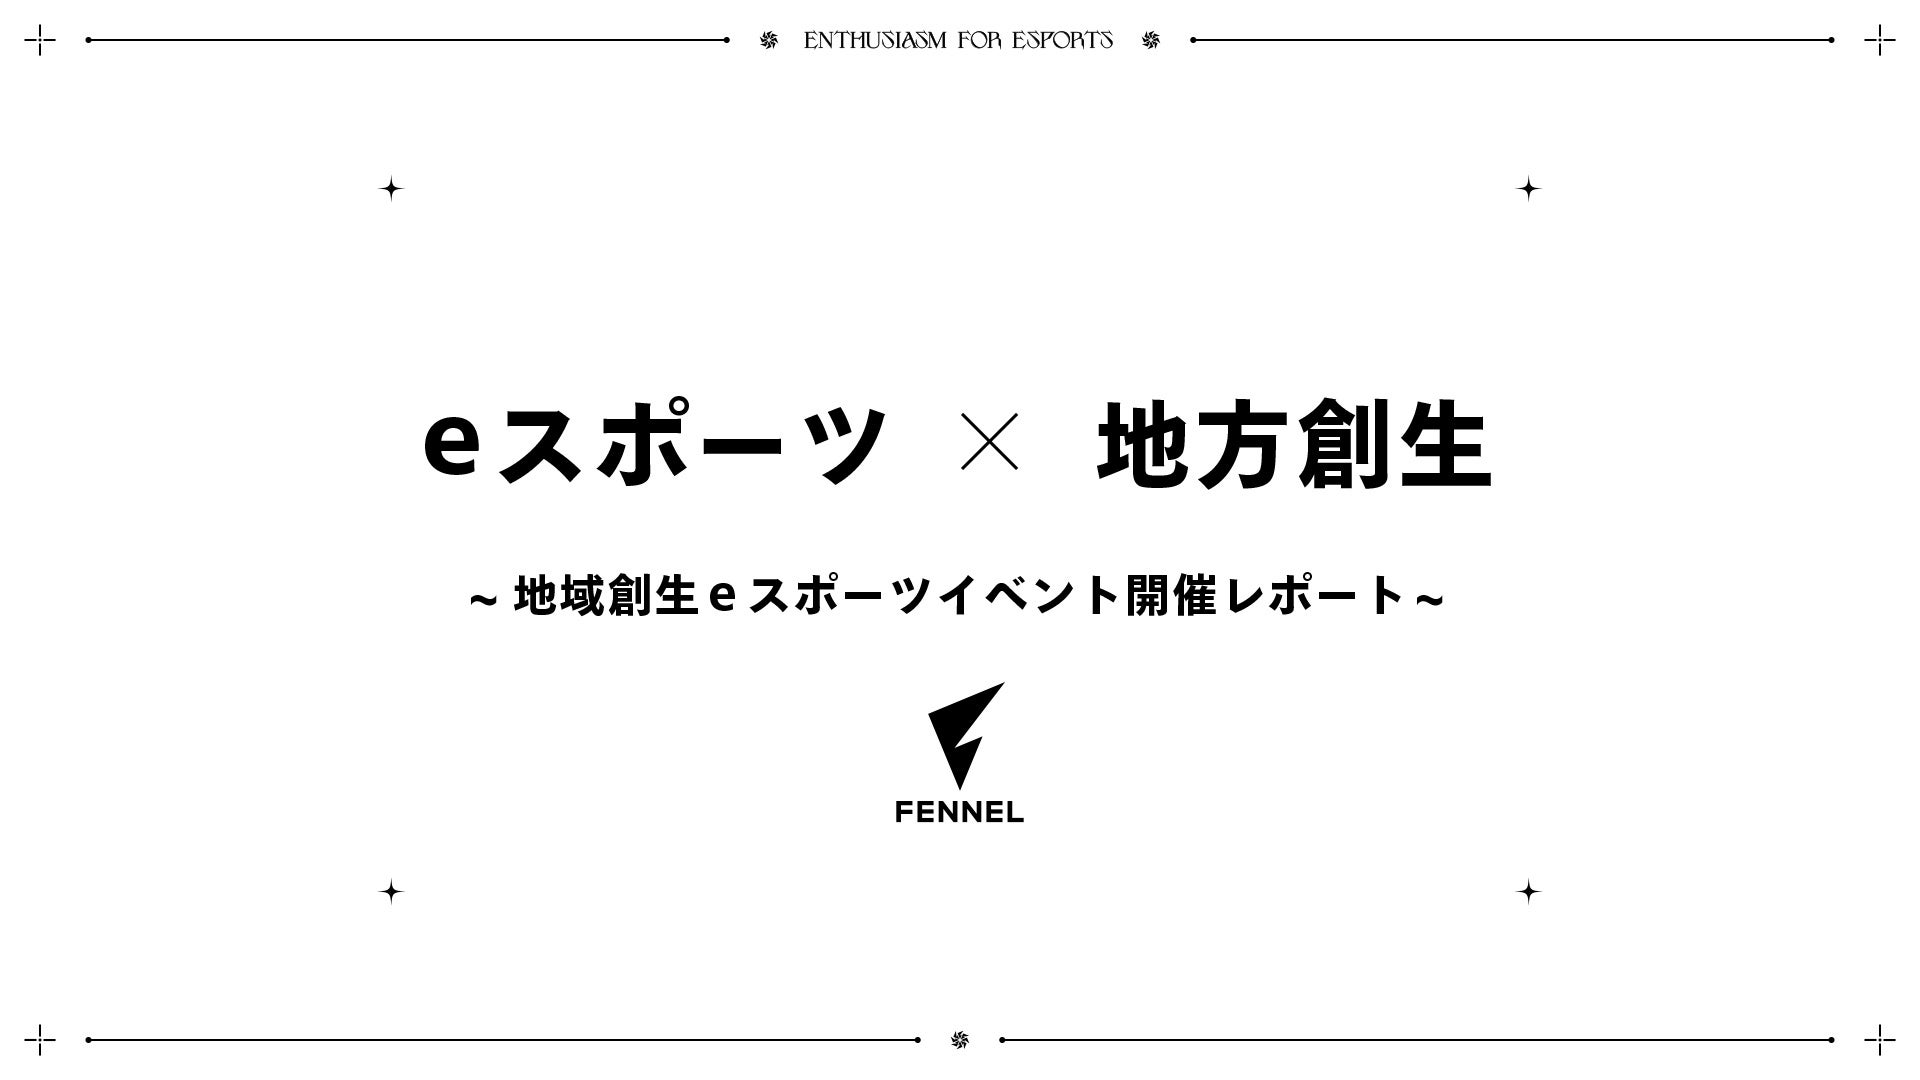 【株式会社Fennel】eスポーツを活用した新しい地域創生事業の取り組みを推進。地域発、函館高専の学生が企画・運営する地域創生eスポーツイベント開催レポート